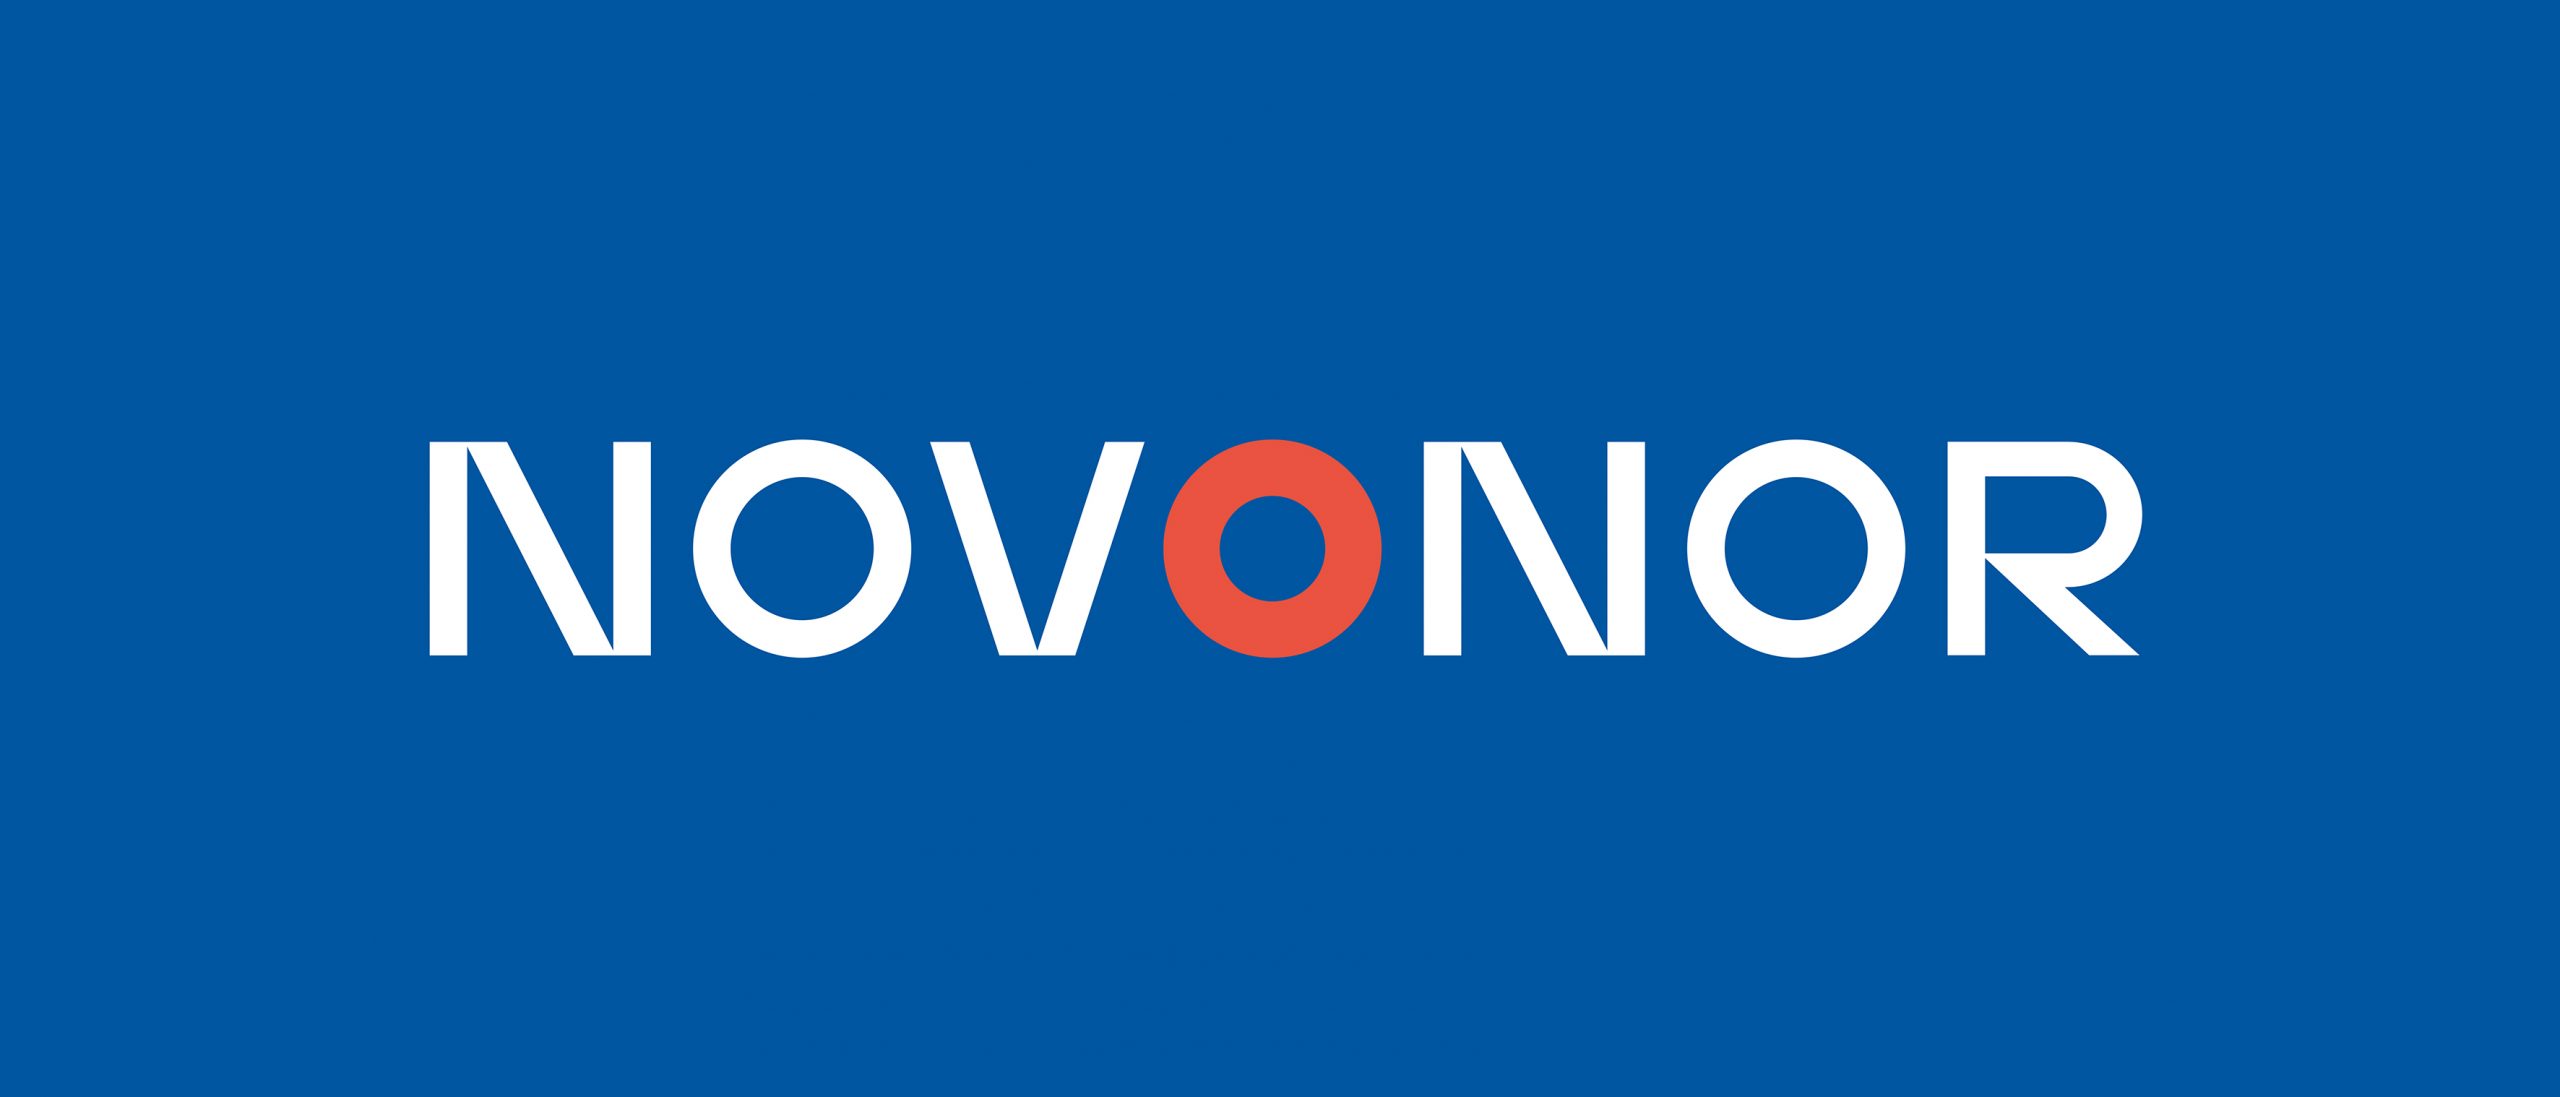 Logo Novonor (novo nome da Odebrecht) 